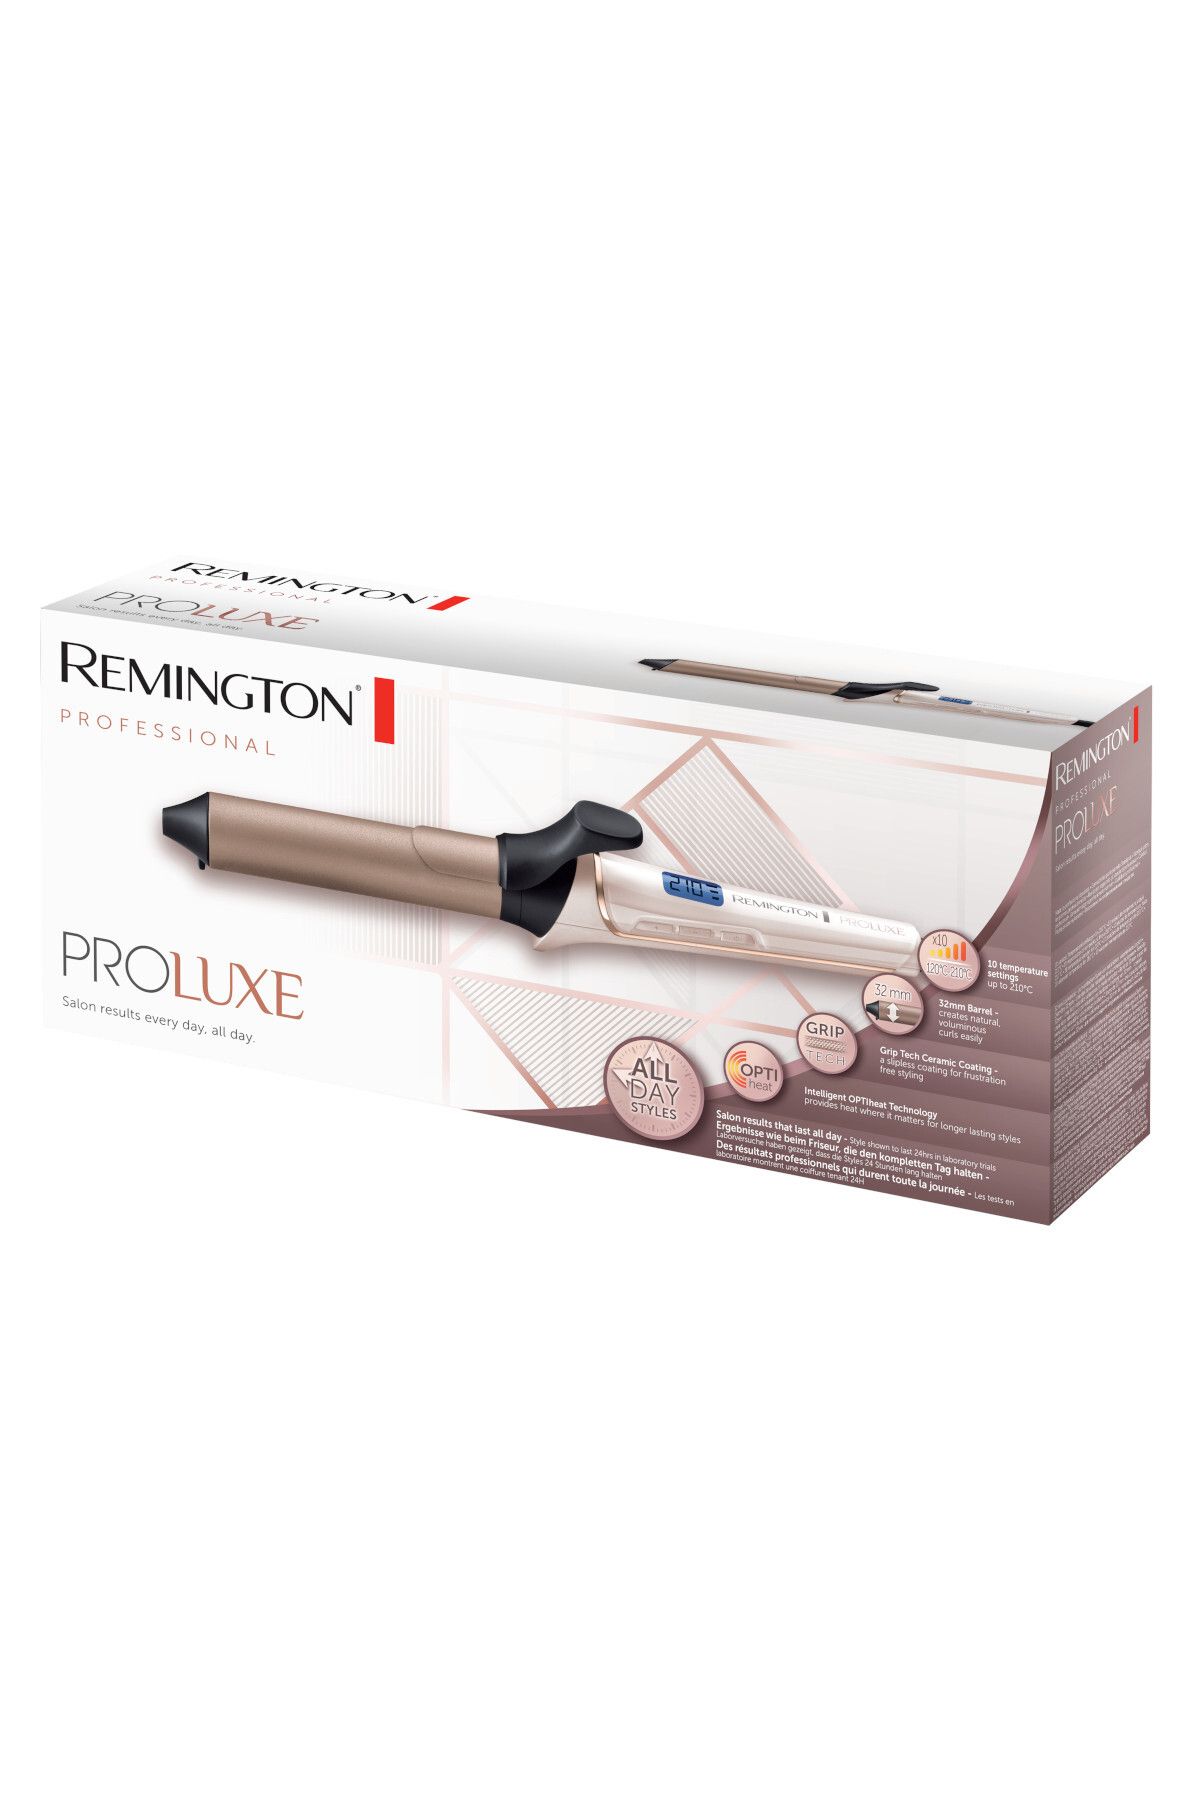 Remington Proluxe Hair Curling Tong